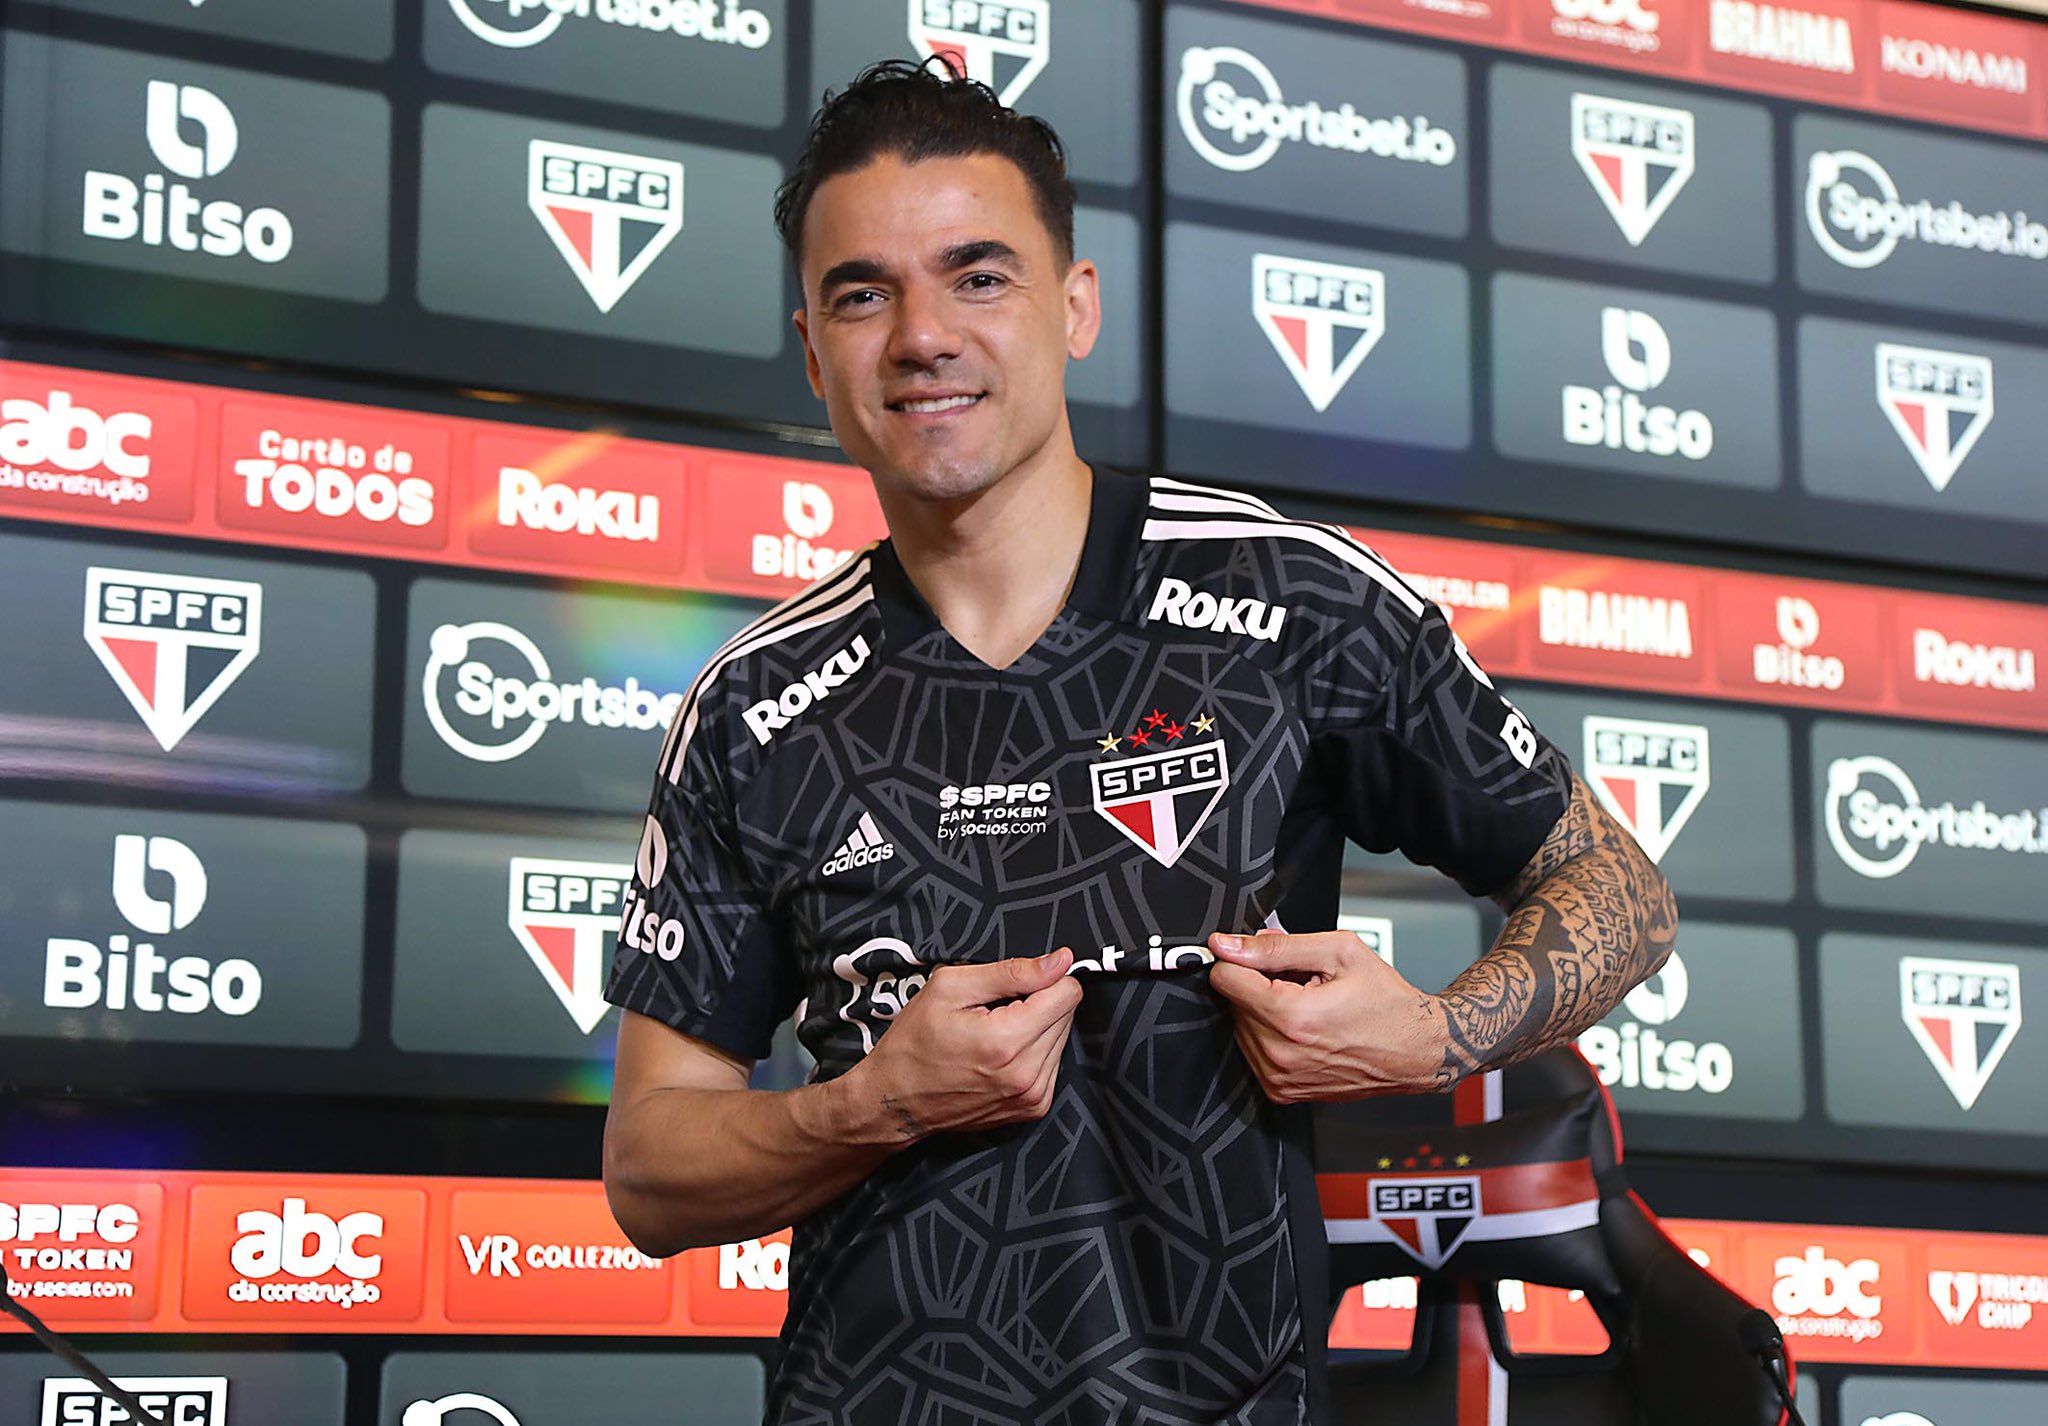 Felipe Alves é apresentado no São Paulo e frisa: ‘Defender esse Clube é uma oportunidade de ouro’